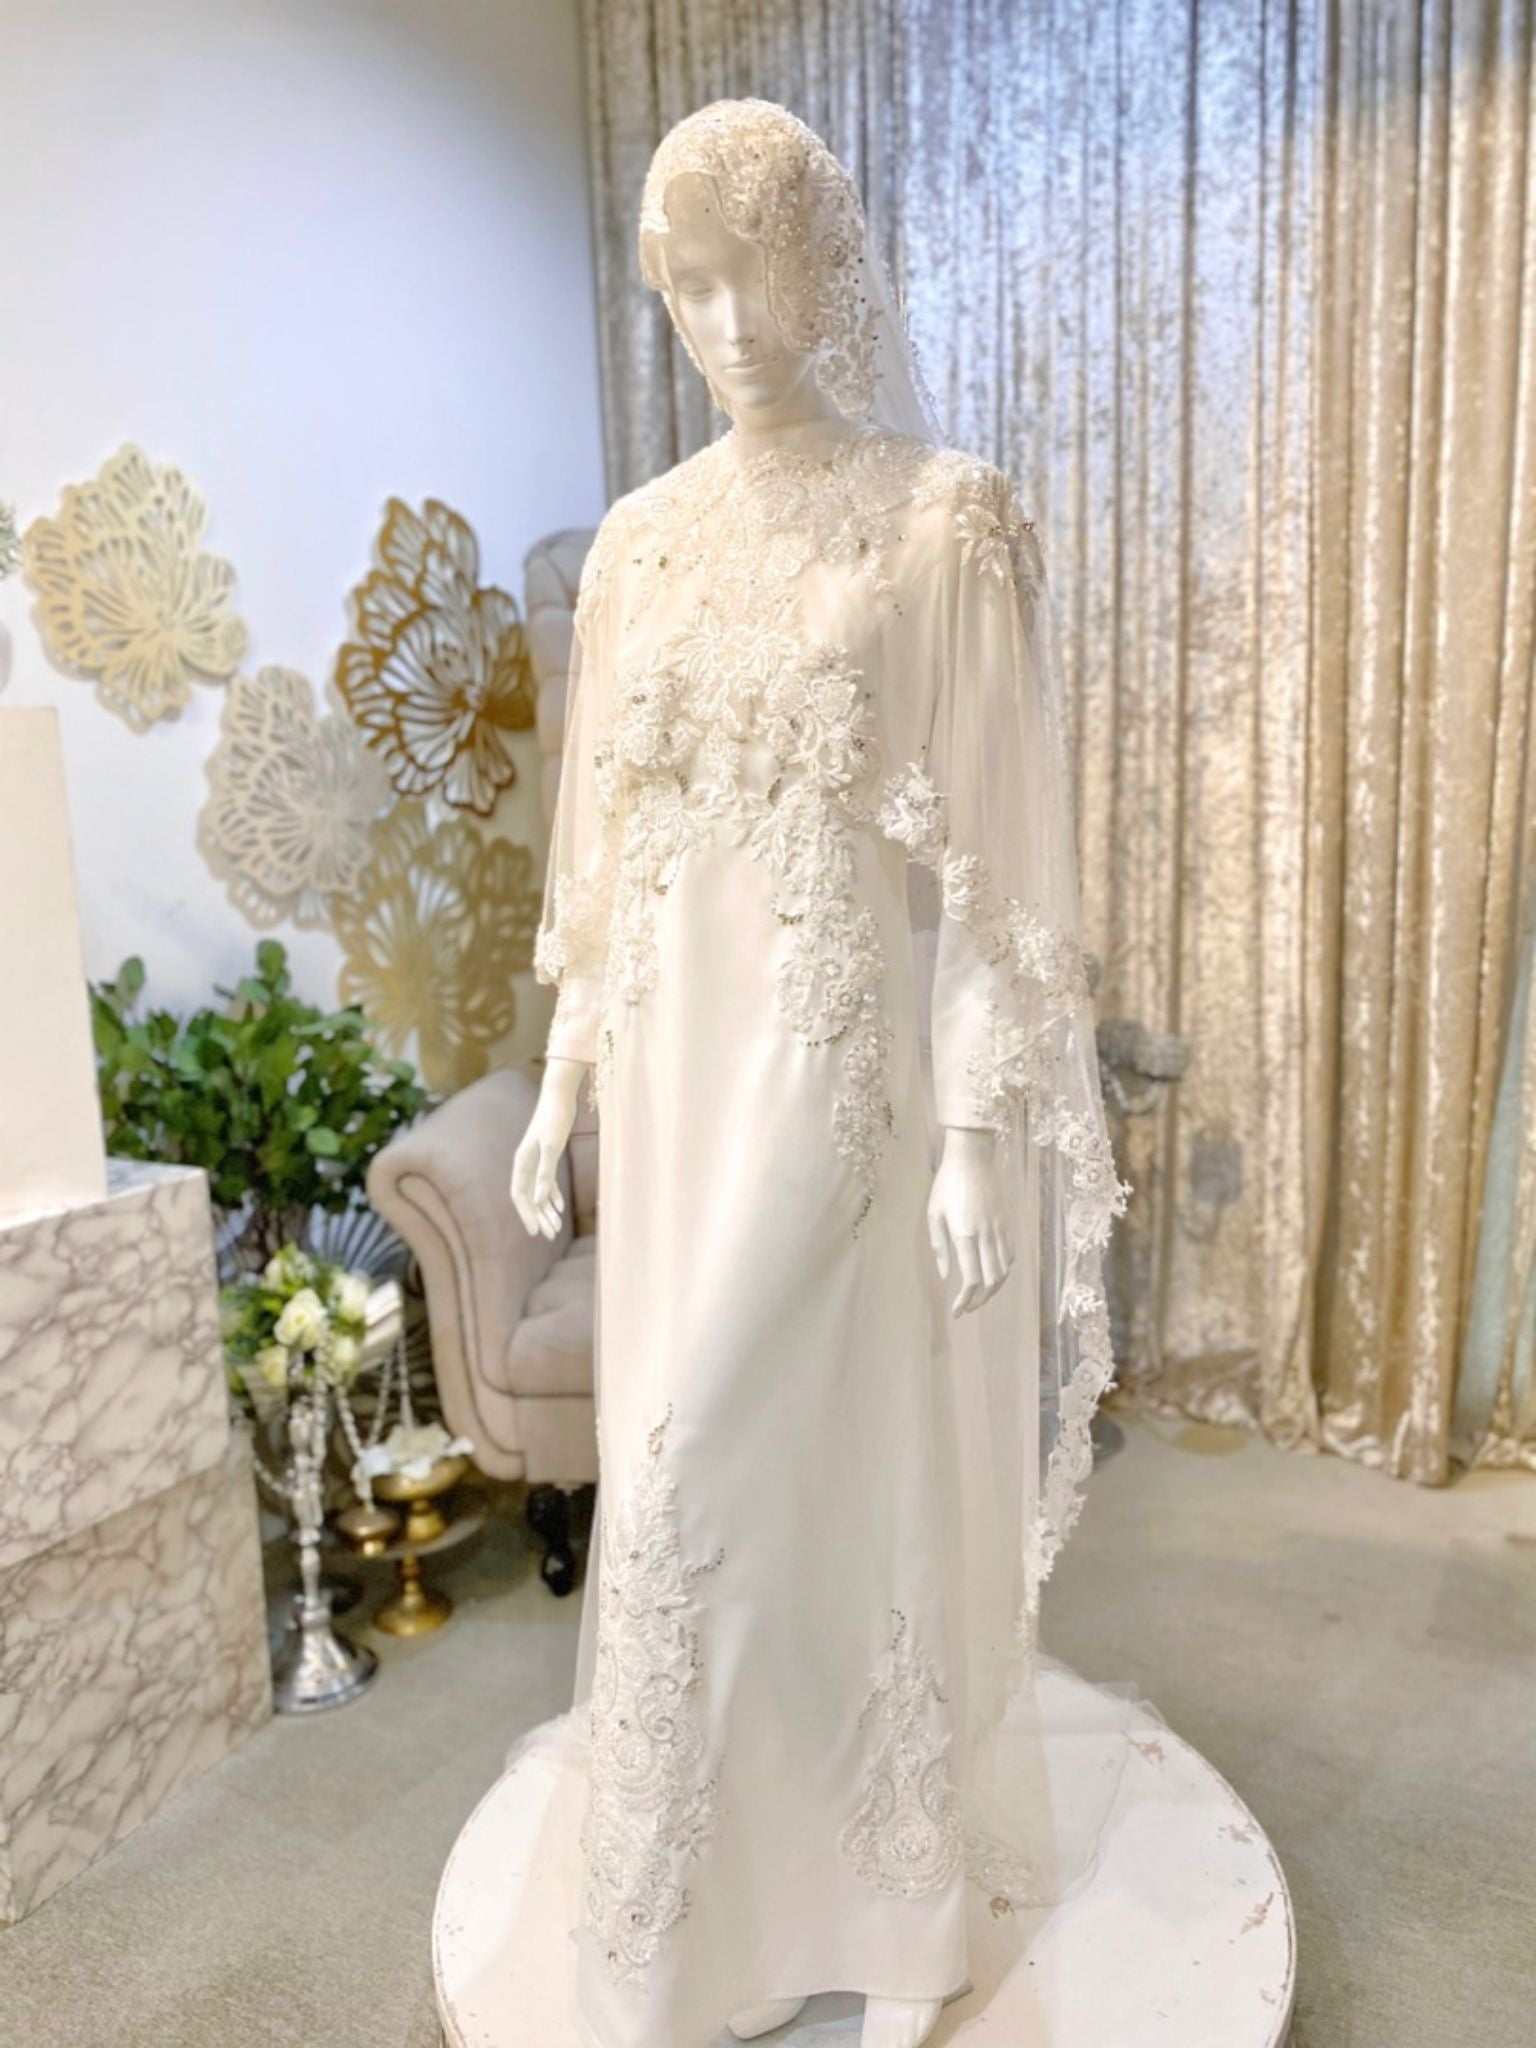 HAWA - Baju Nikah Off White Essential Loose Dress with Detachable Cape-baju nikah-sewa baju nikah-tempah baju nikah